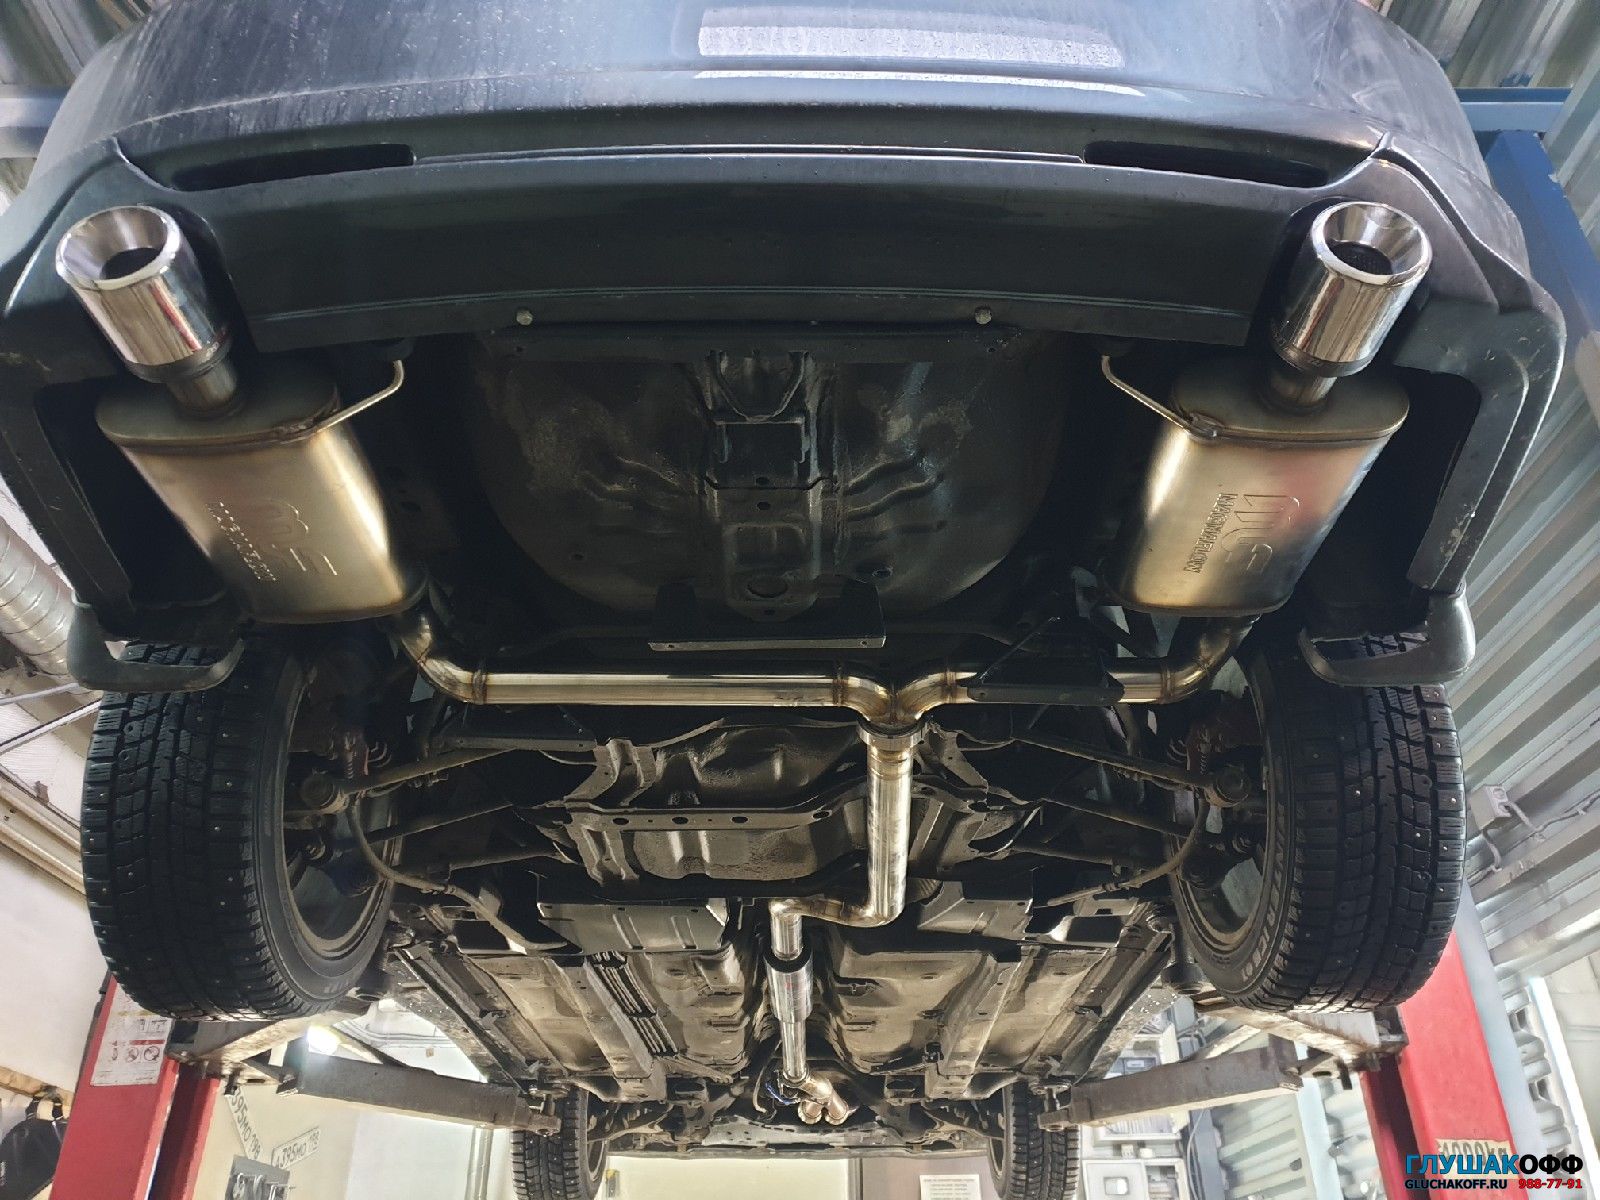 Тюнинг выхлопной системы Honda Accord в СПБ из нержавейки ГлушакоФФ